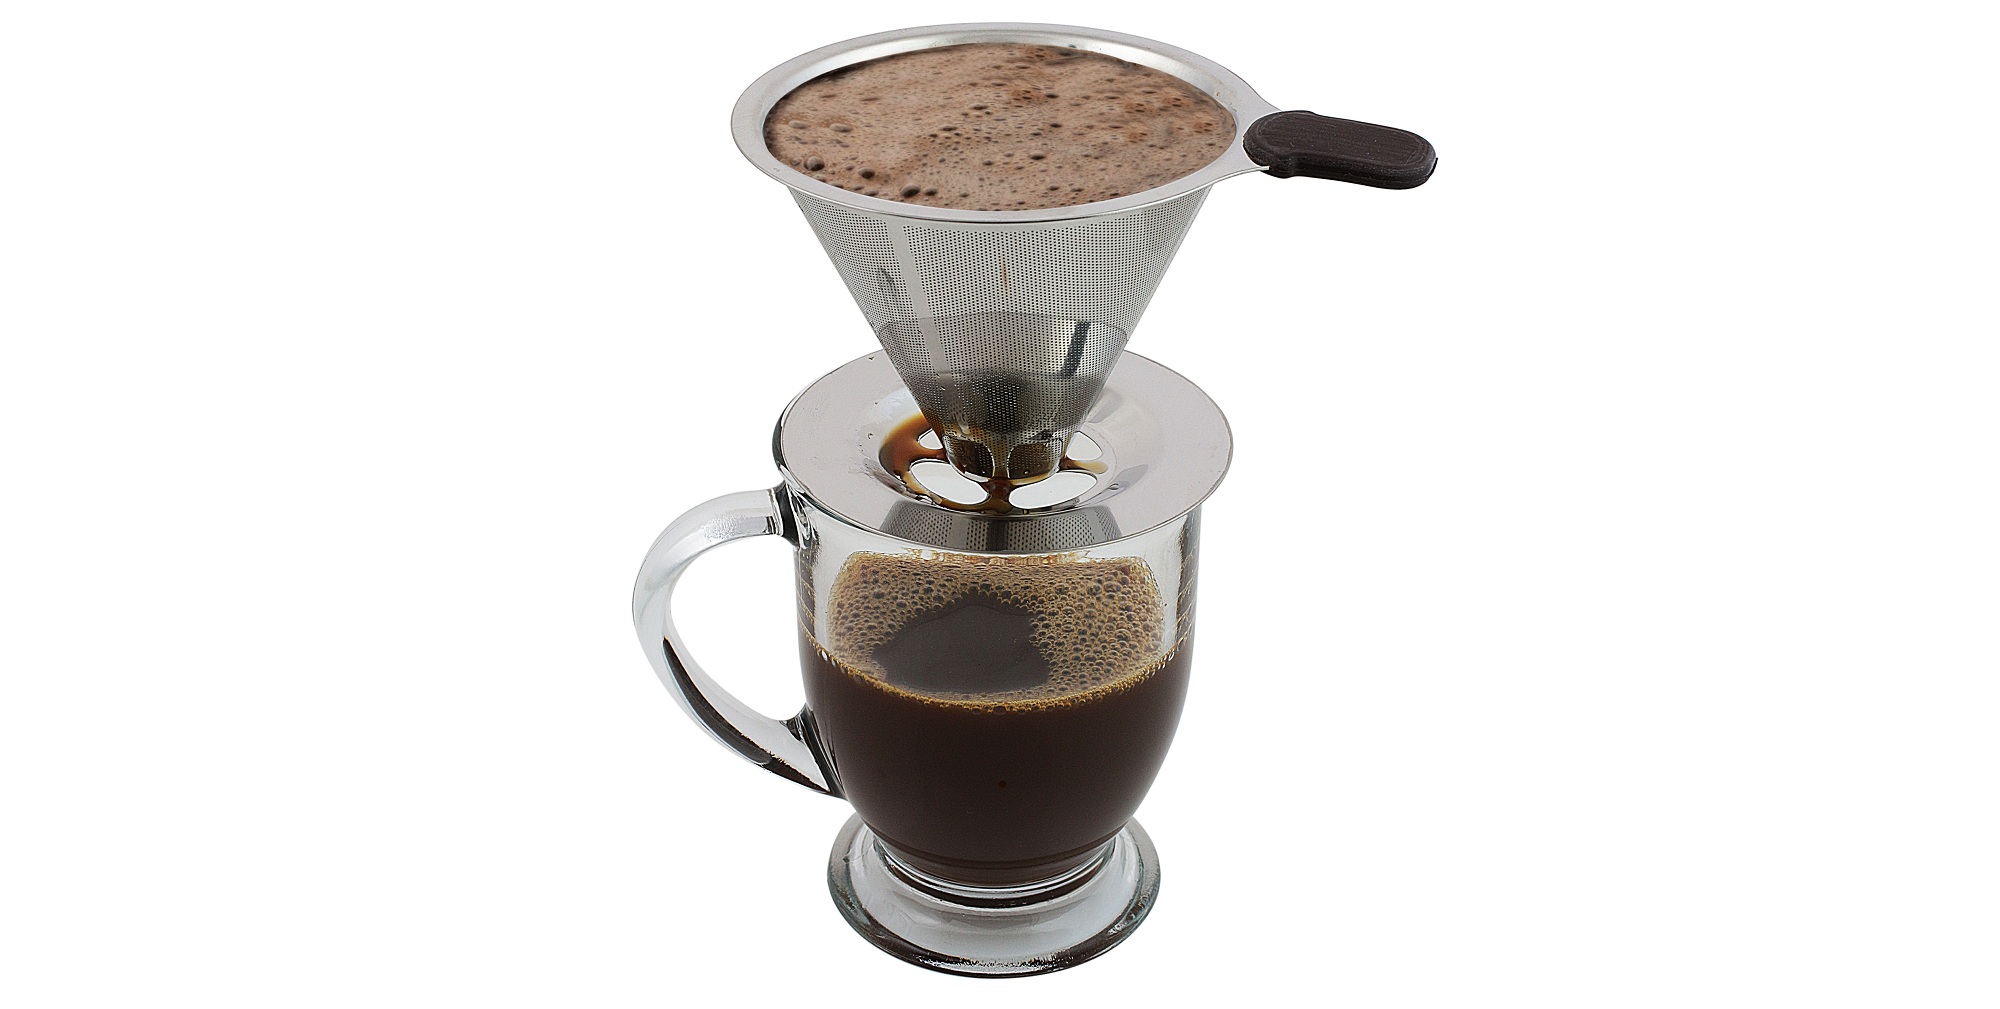 Как сварить идеальный кофе в домашних условиях - Лайфхакер